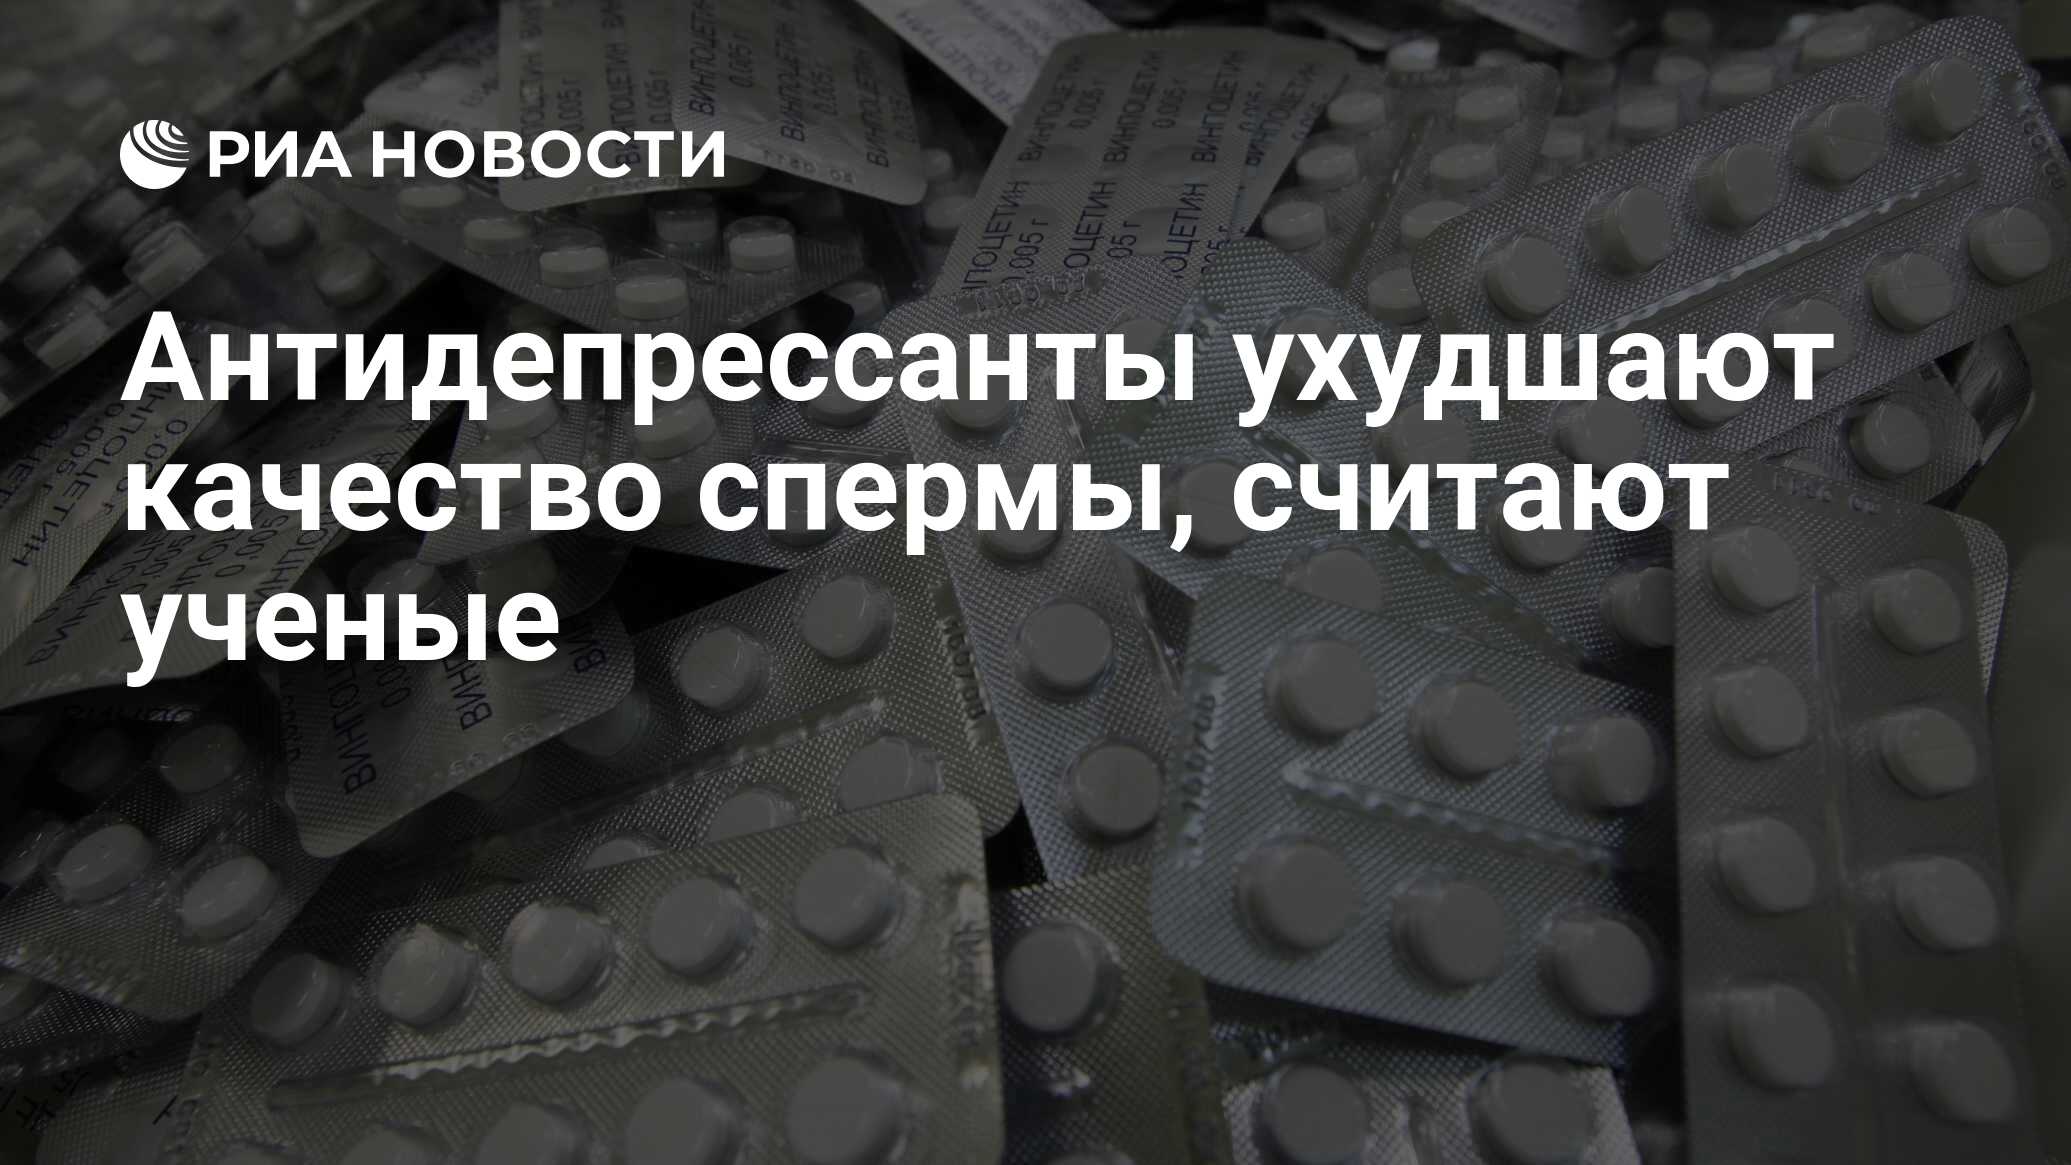 Антидепрессанты ухудшают качество спермы, считают ученые - РИА Новости,  25.09.2008